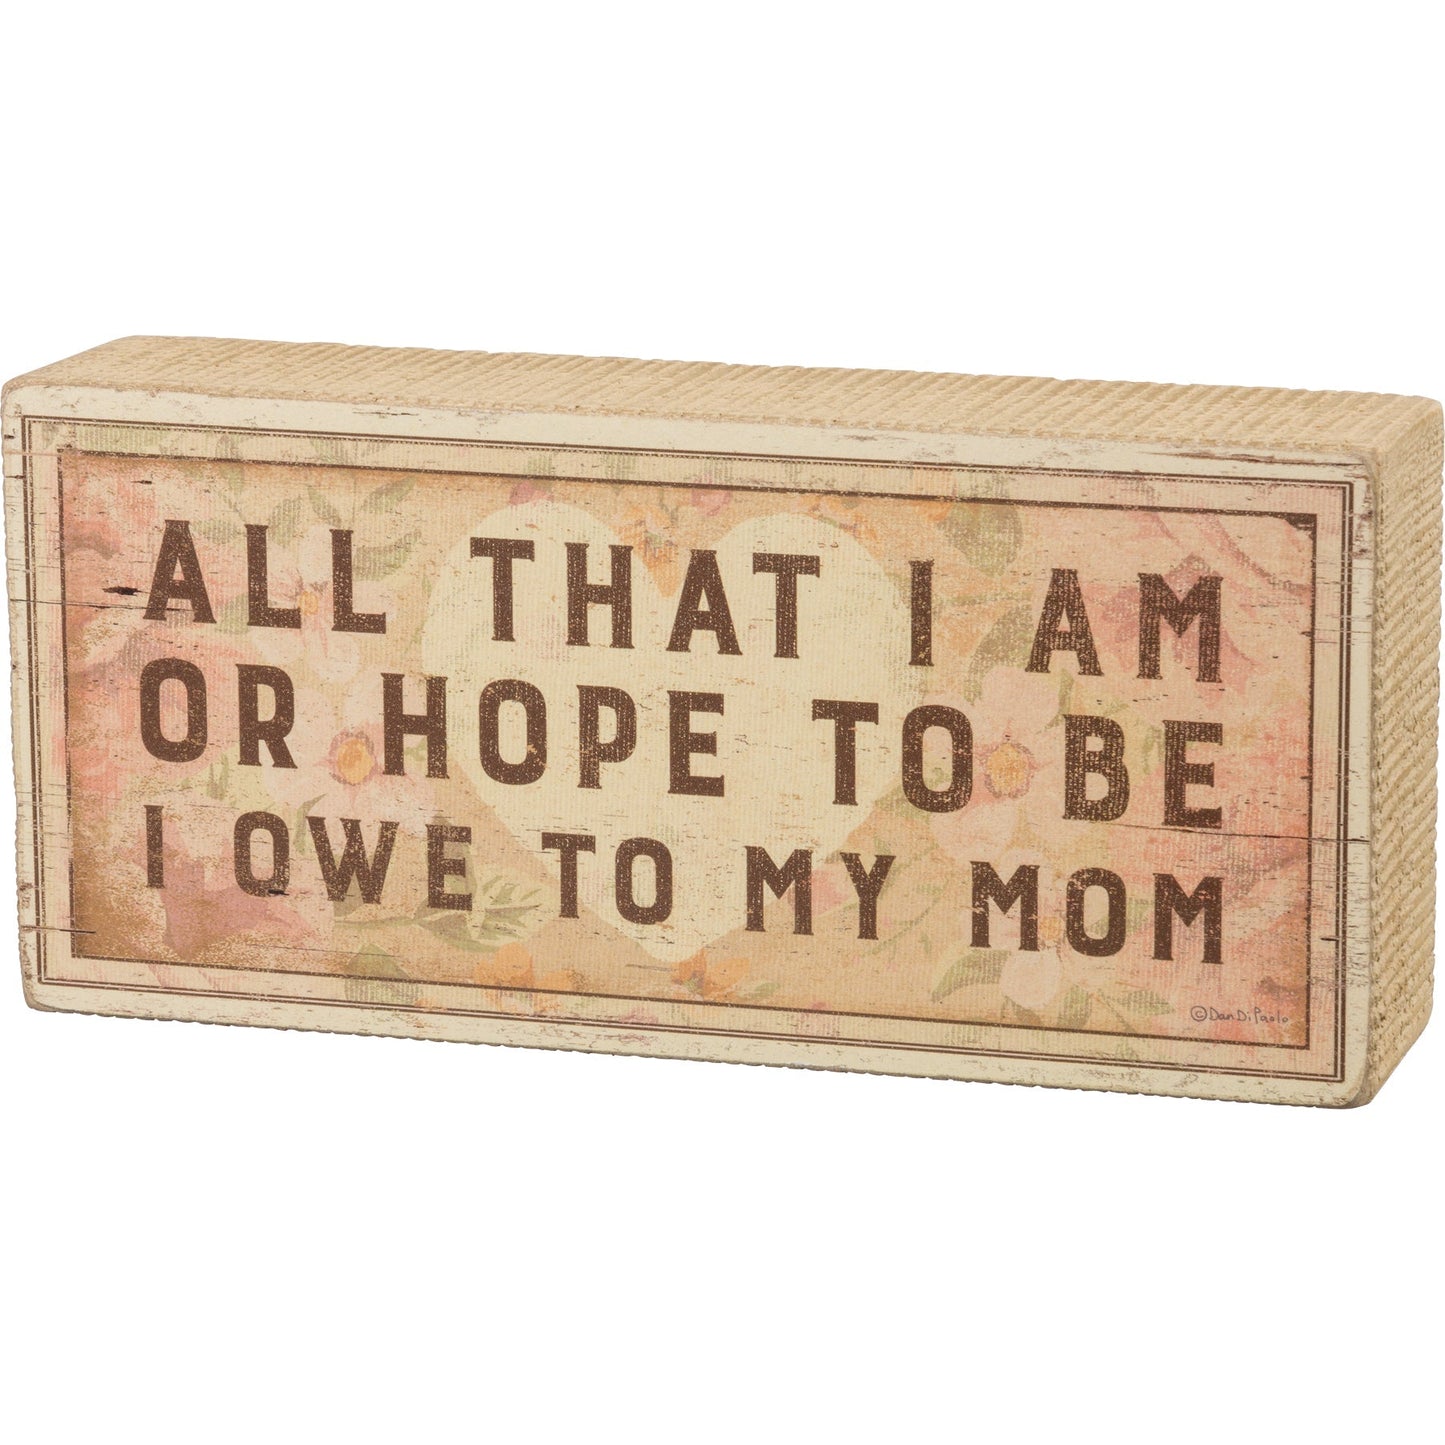 All That I Am Or Hope To Be I Owe To My Mom Wooden Box Sign